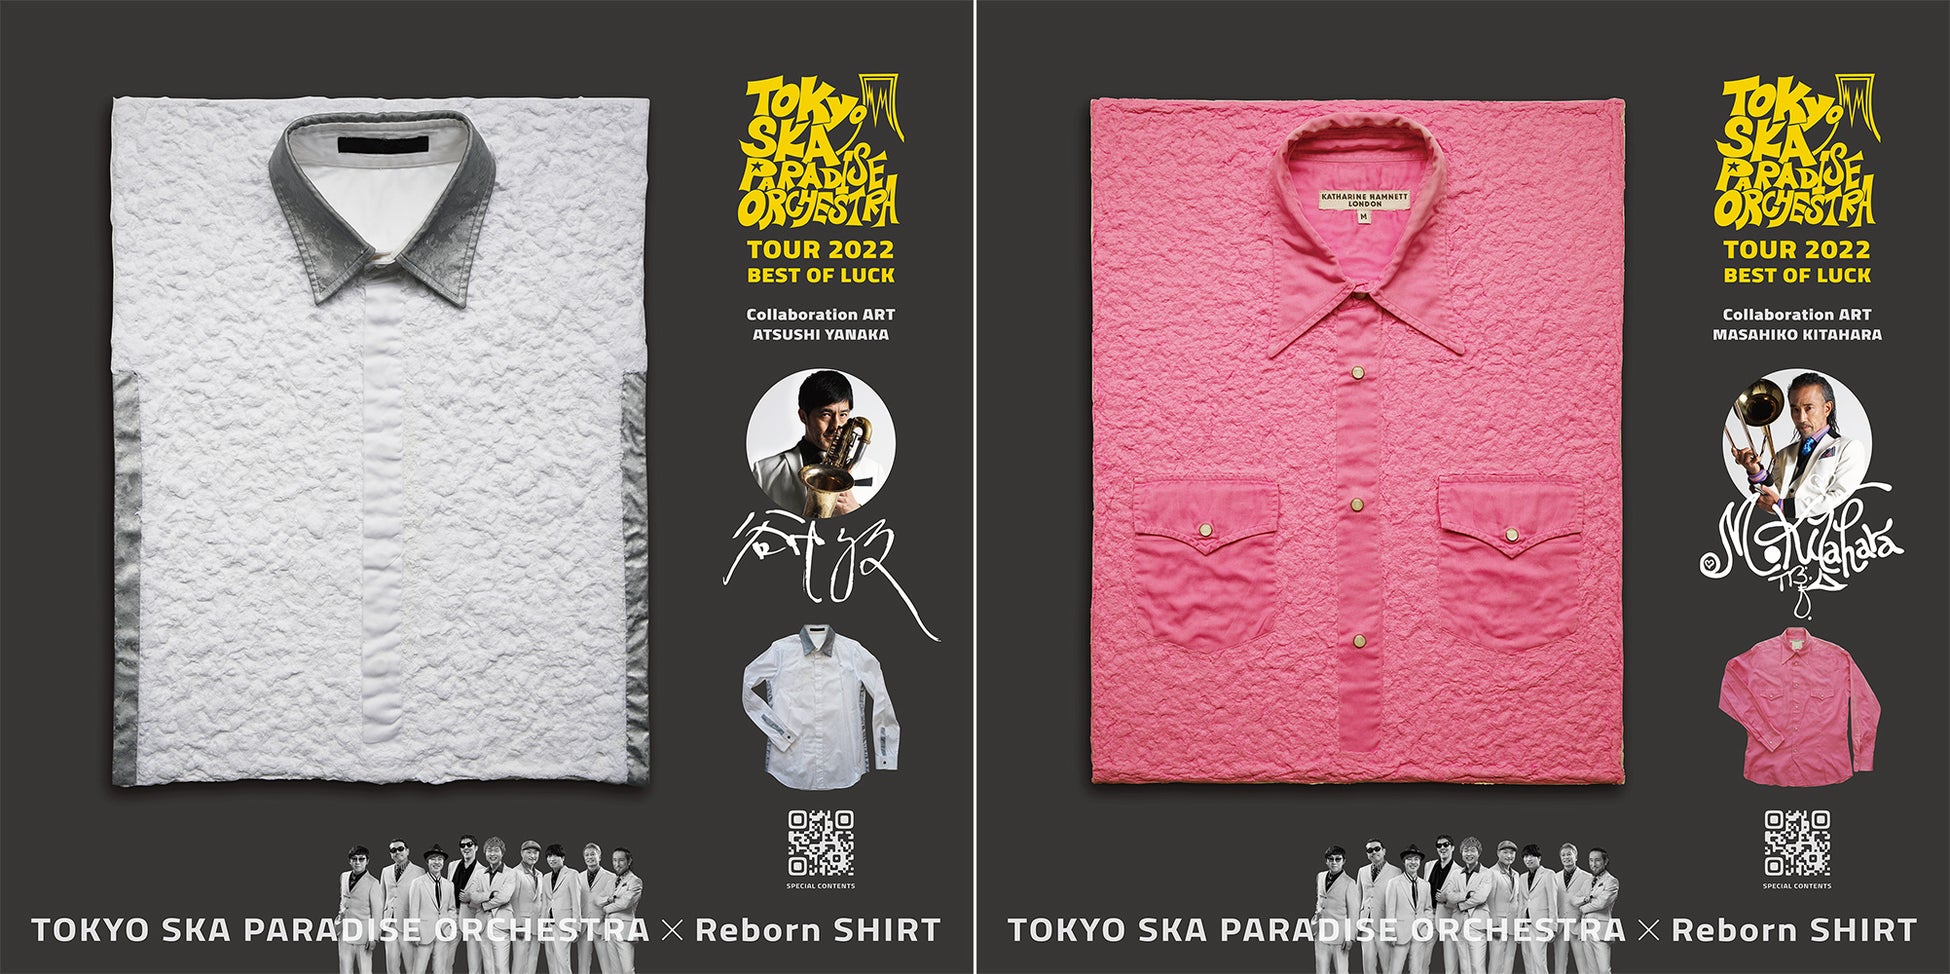 愛用していたシャツを世界にひとつだけのアートによみがえらせる「Reborn SHIRT」が、東京スカパラダイスオーケストラの全国ツアー会場のウェルカムアートに。